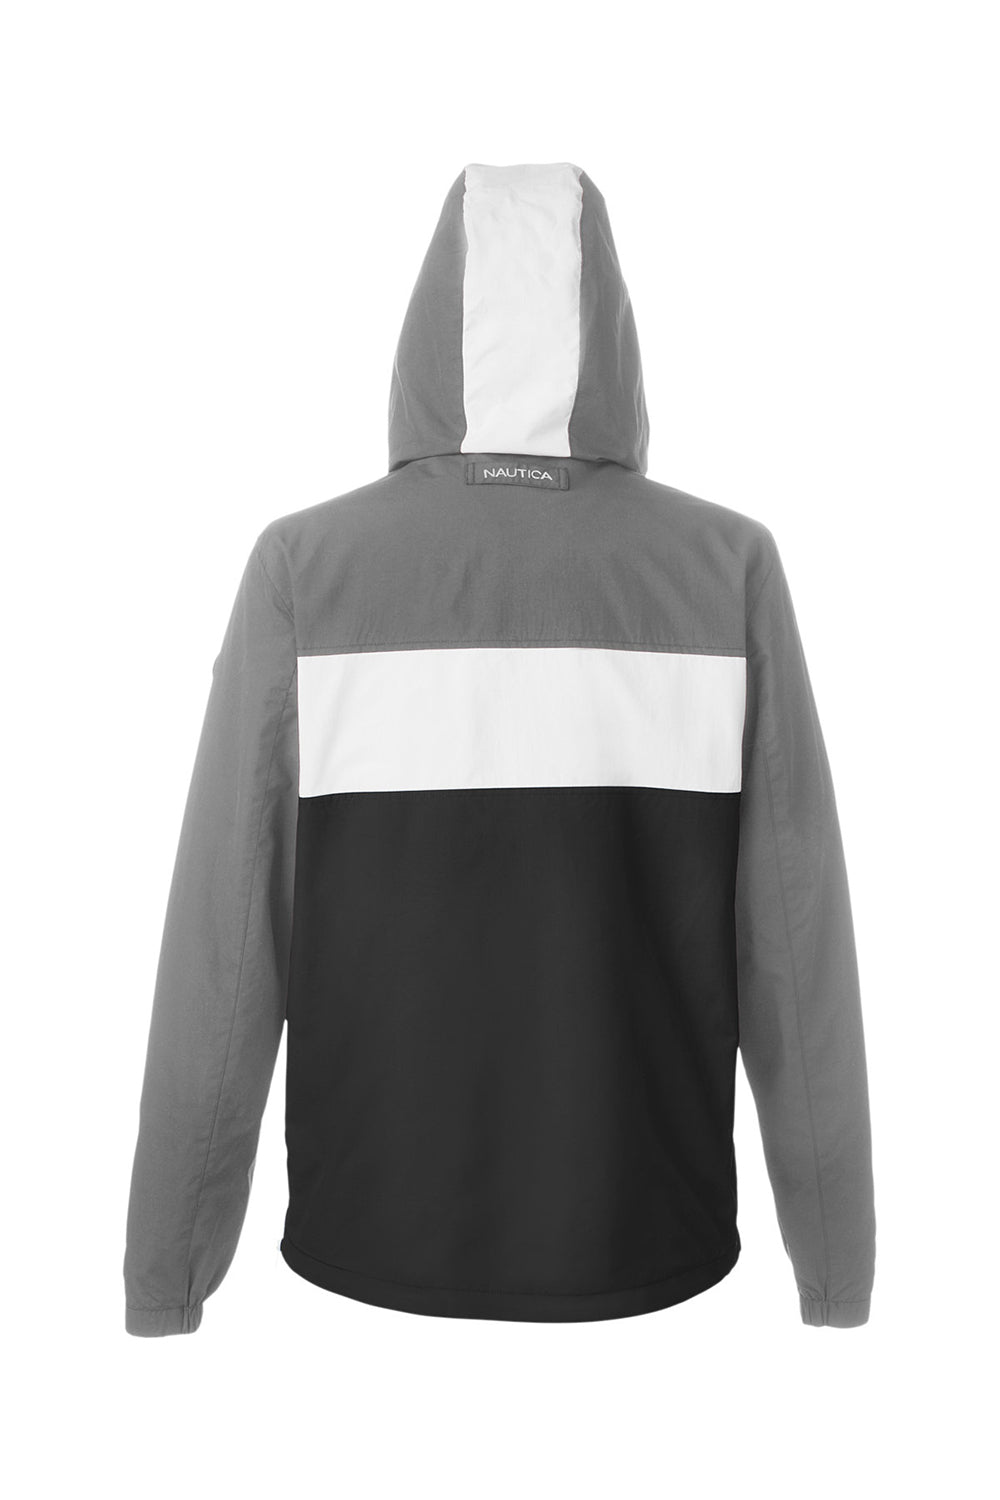 Nautica N17174 Mens Windward 1/4 Zip Hooded Jacket Graphite Grey/Black Flat Back